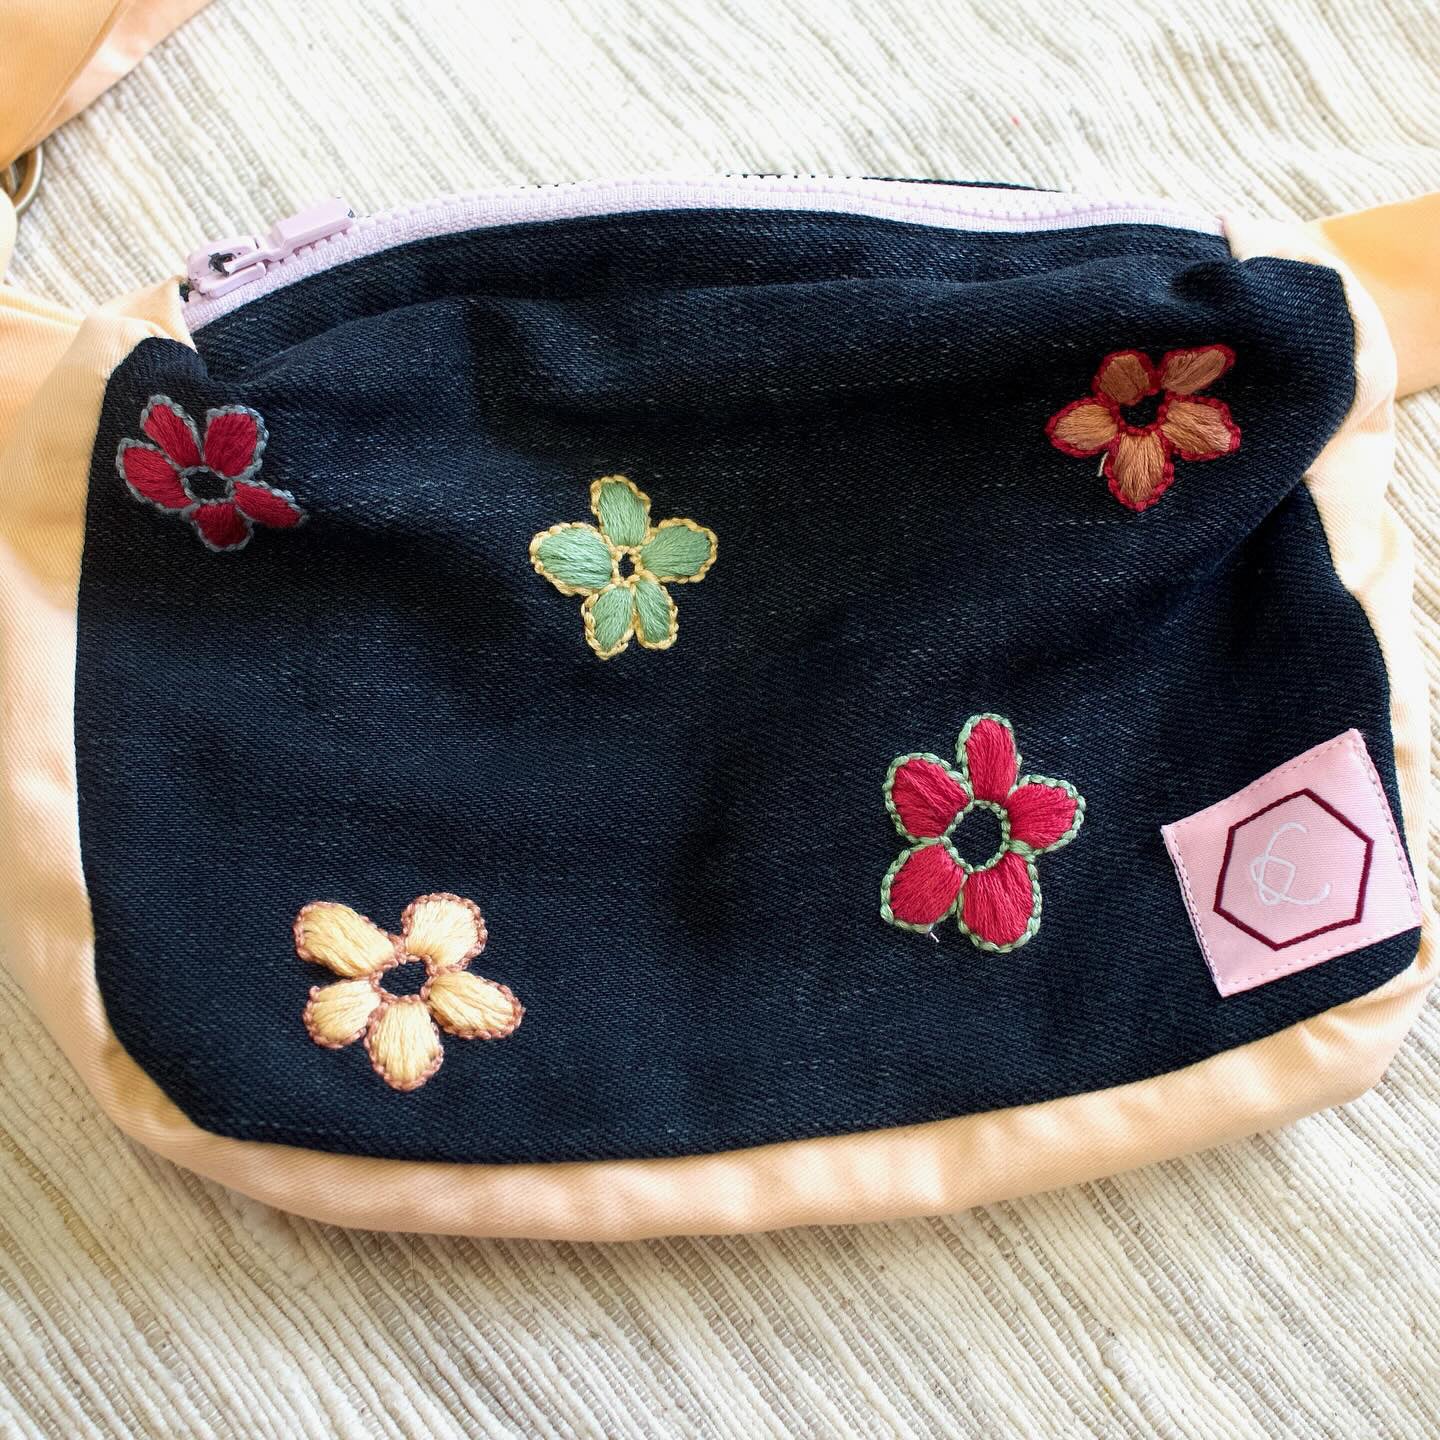 Hand made Embroided Nox Bag (Bum Bag)